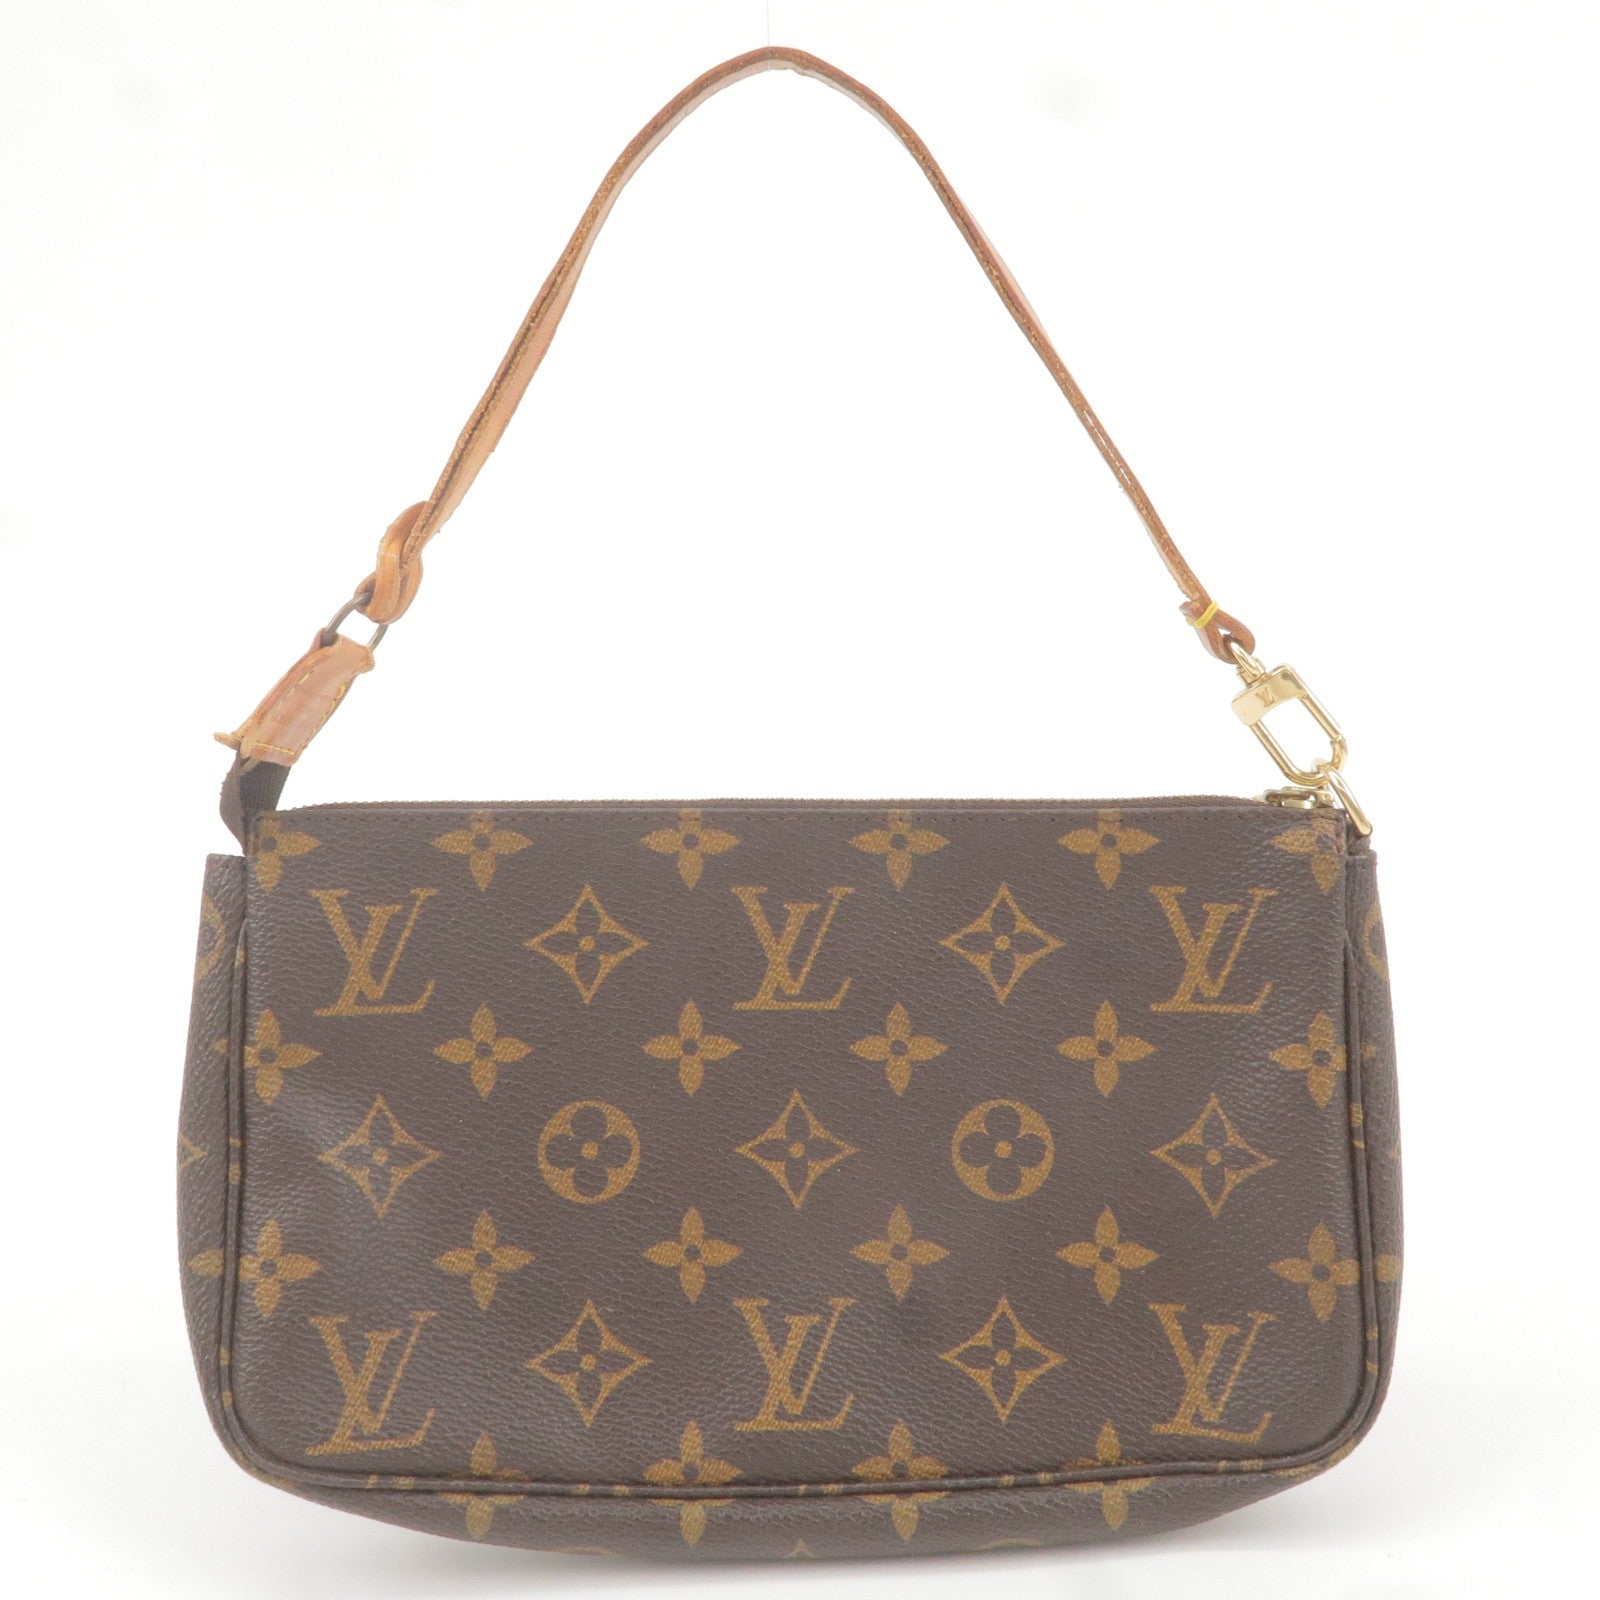 Louis Vuitton Chain Foulard Bag Charm, Brown, One Size